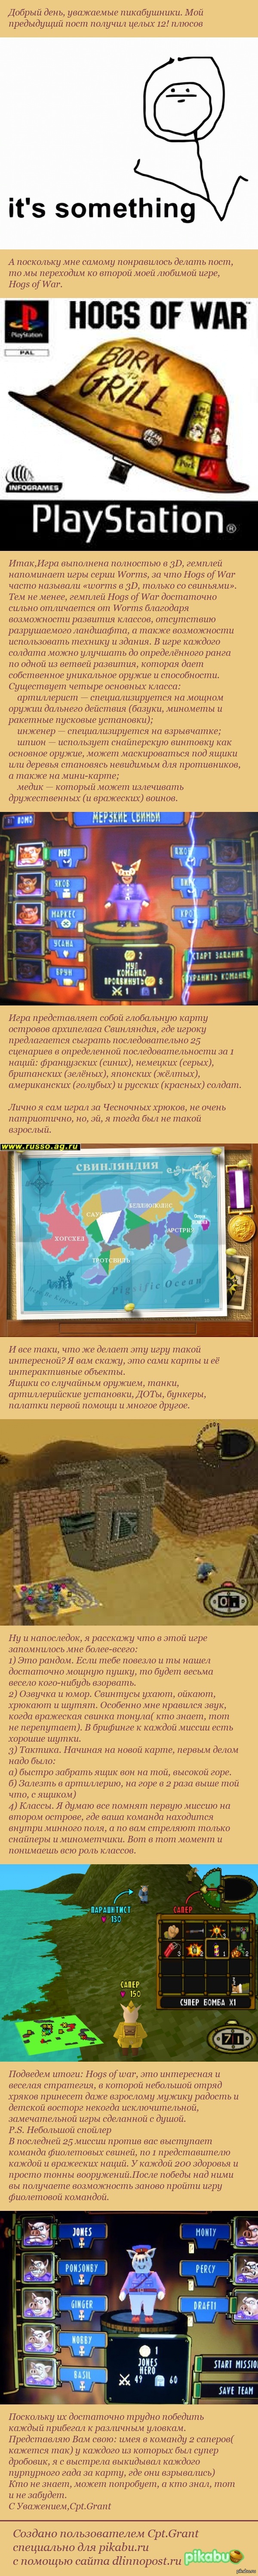        PS1, Hogs of War     <a href="http://pikabu.ru/story/byila_i_ostaetsya_isklyuchitelno_khoroshey_igroy_3001582">http://pikabu.ru/story/_3001582</a>